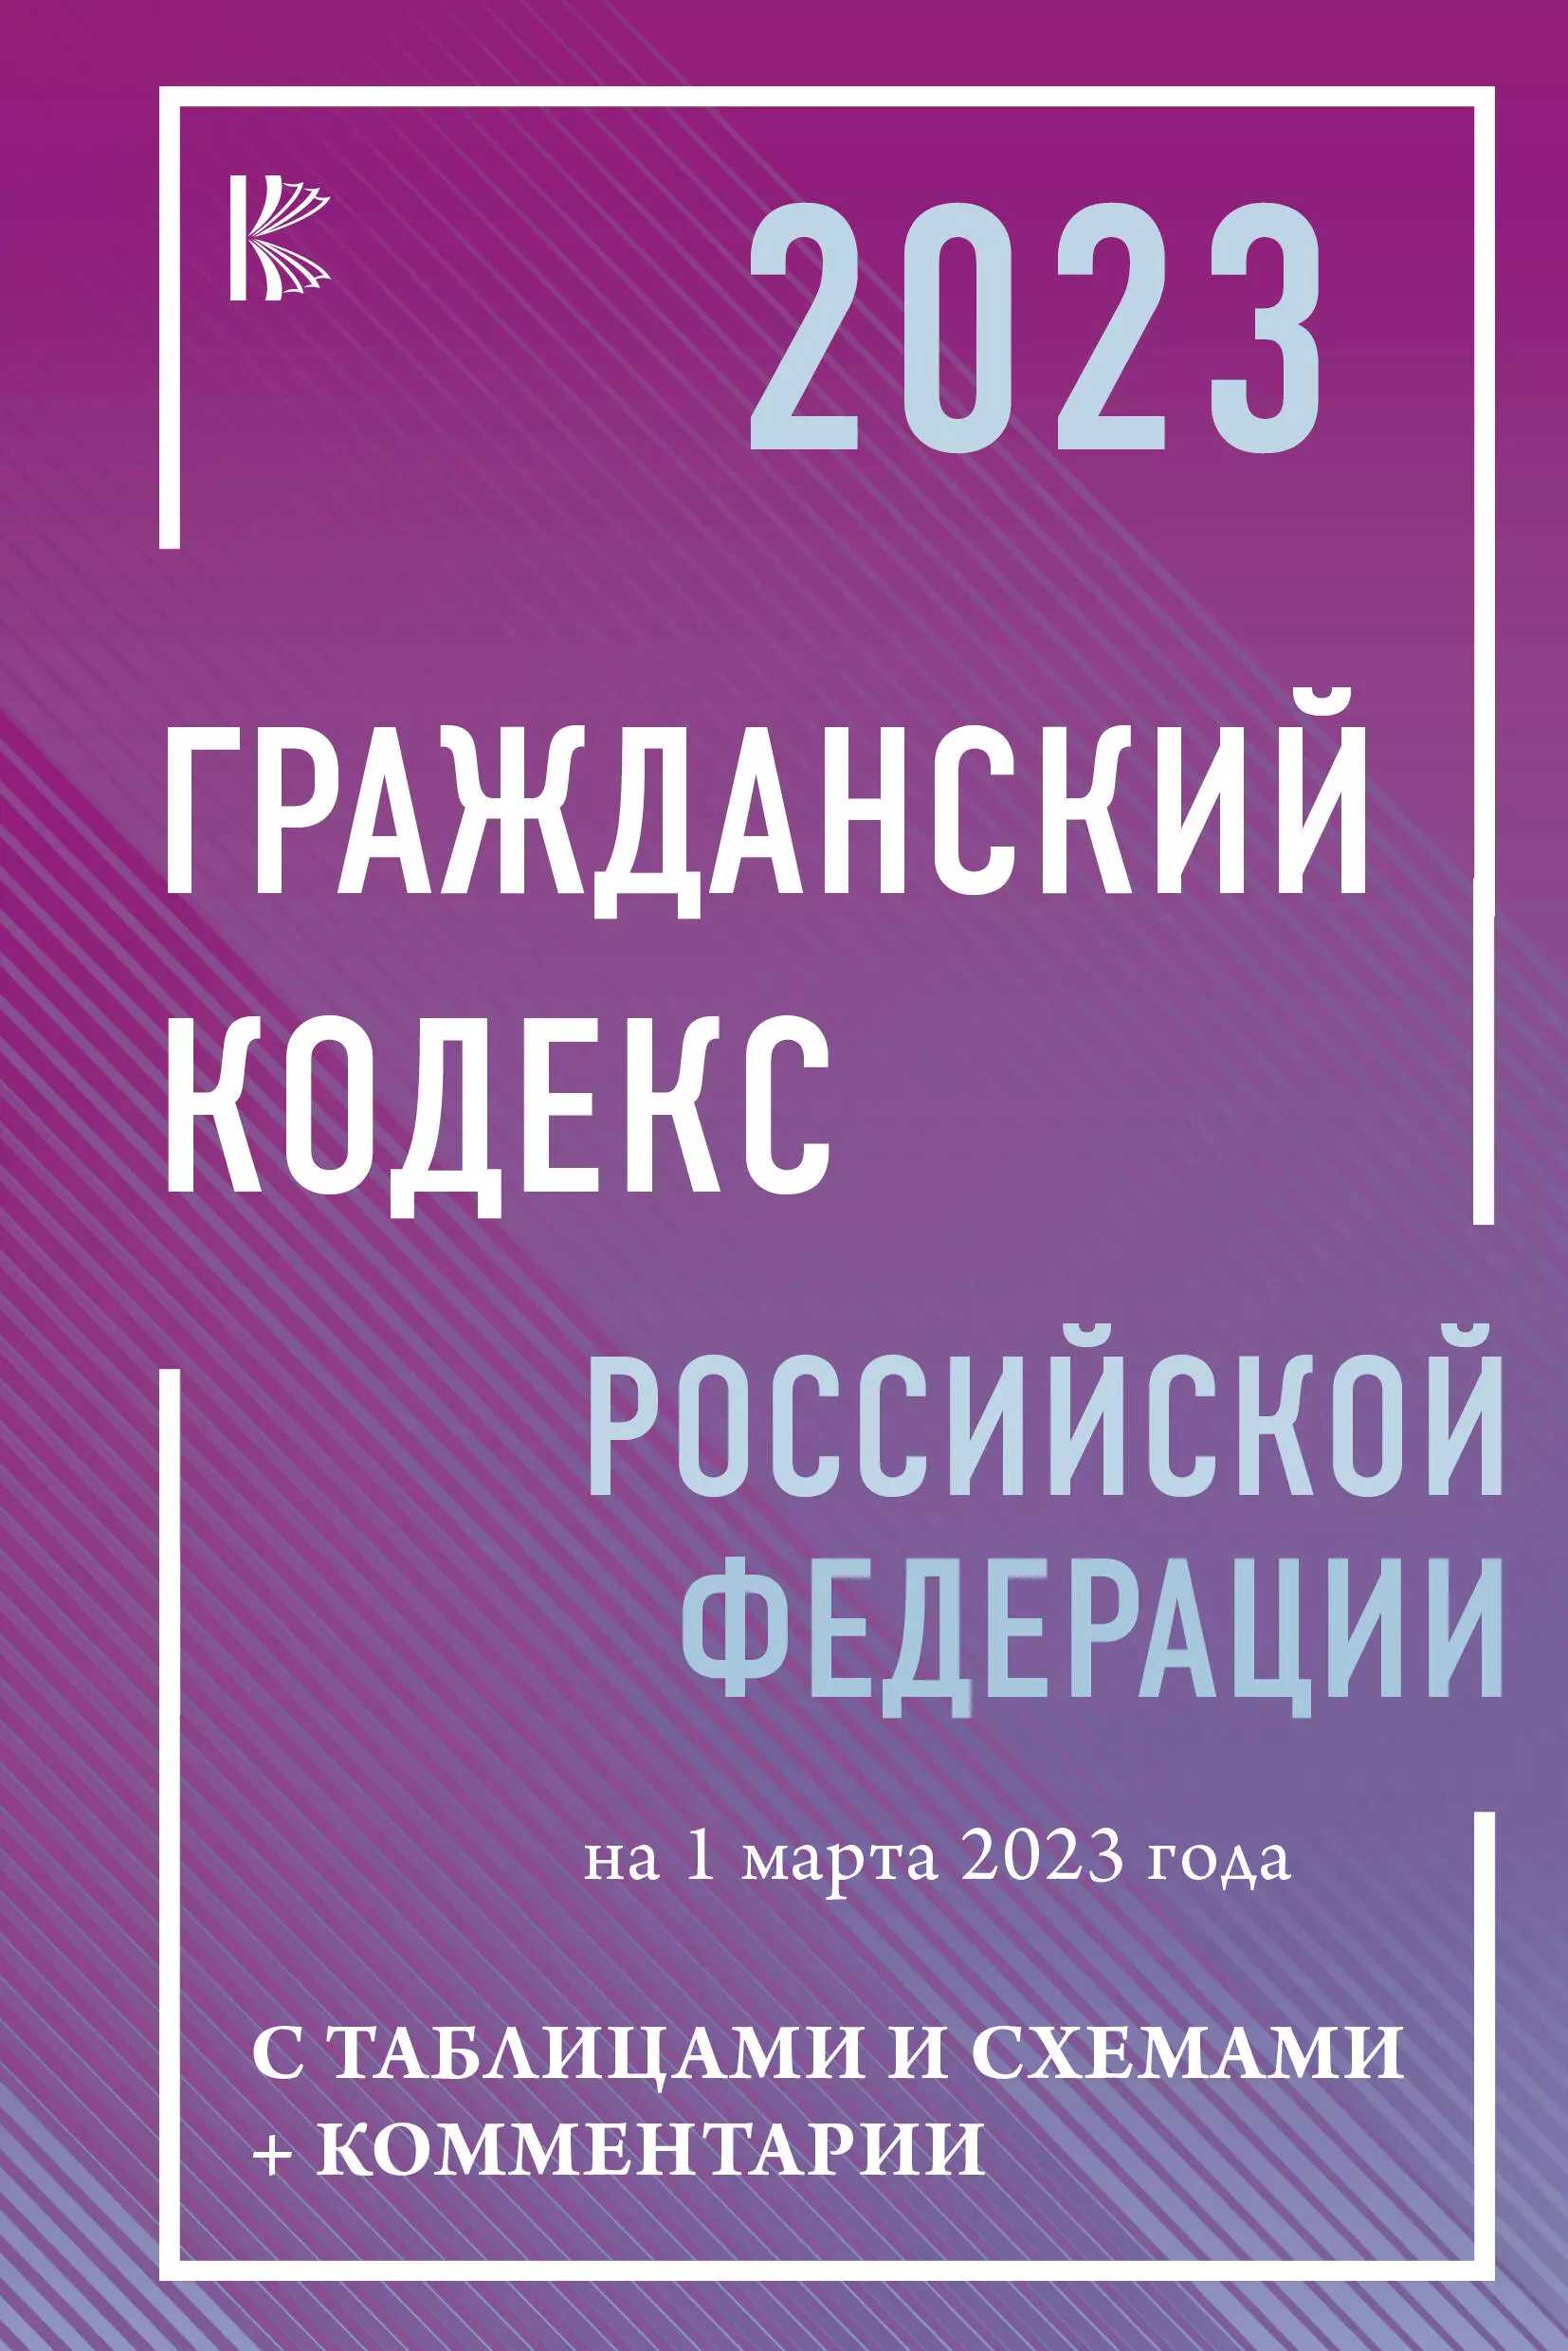  - Гражданский Кодекс Российской Федерации на 1 марта 2023 года с таблицами и схемами + комментарии